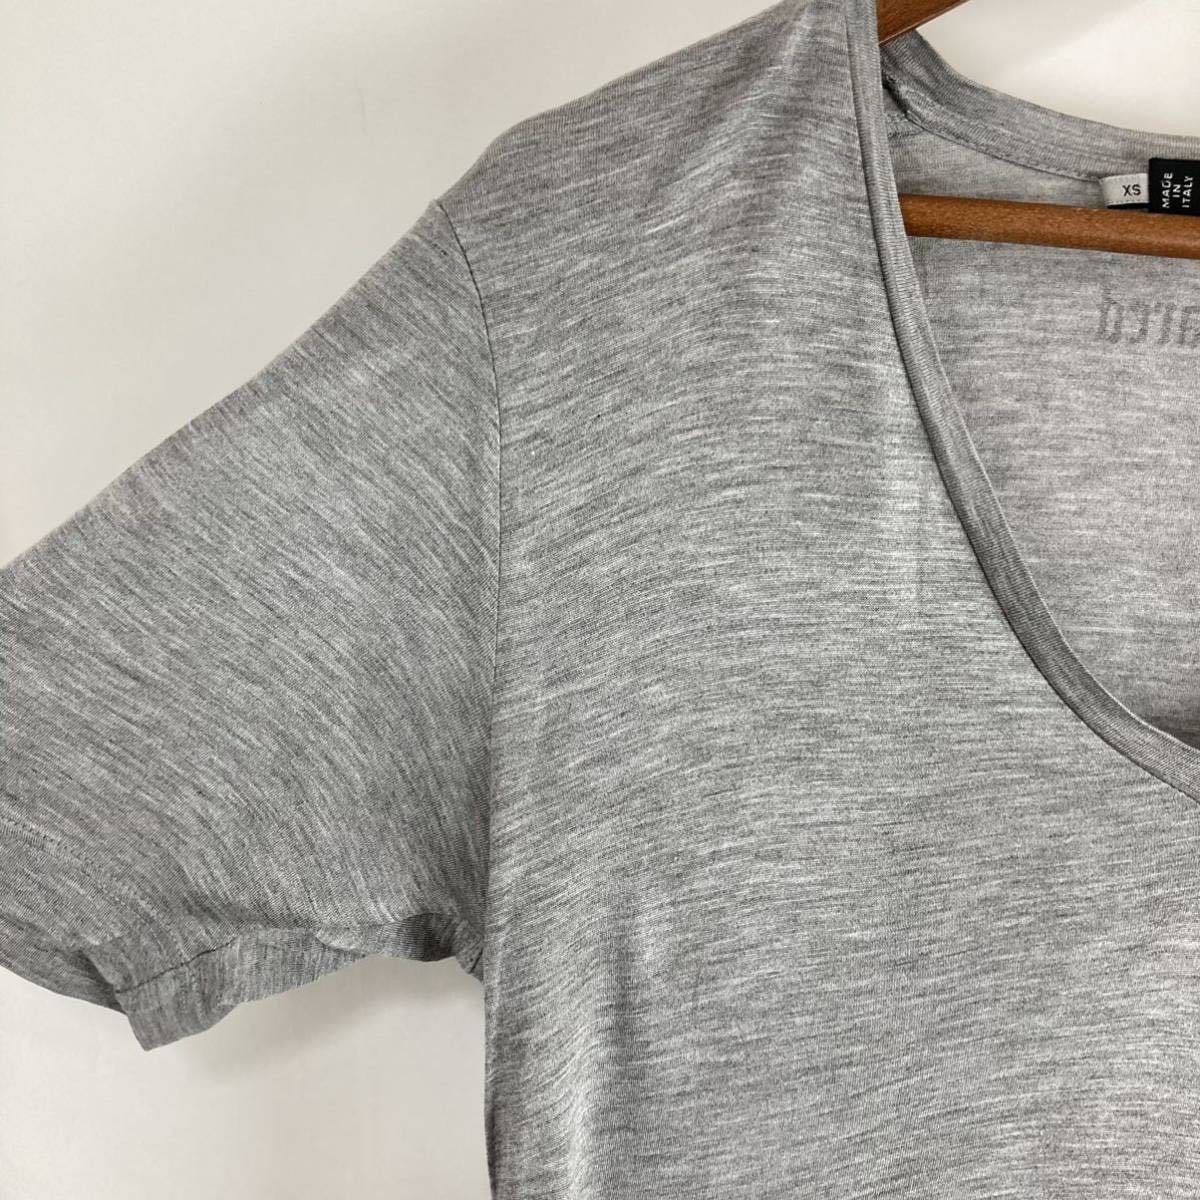 Dsquared2 DSQ2 ディースクエアード メンズ 半袖Tシャツ カットソー トップス ロゴ スパンコール レーヨン100% グレー 灰色 XSサイズ_画像5